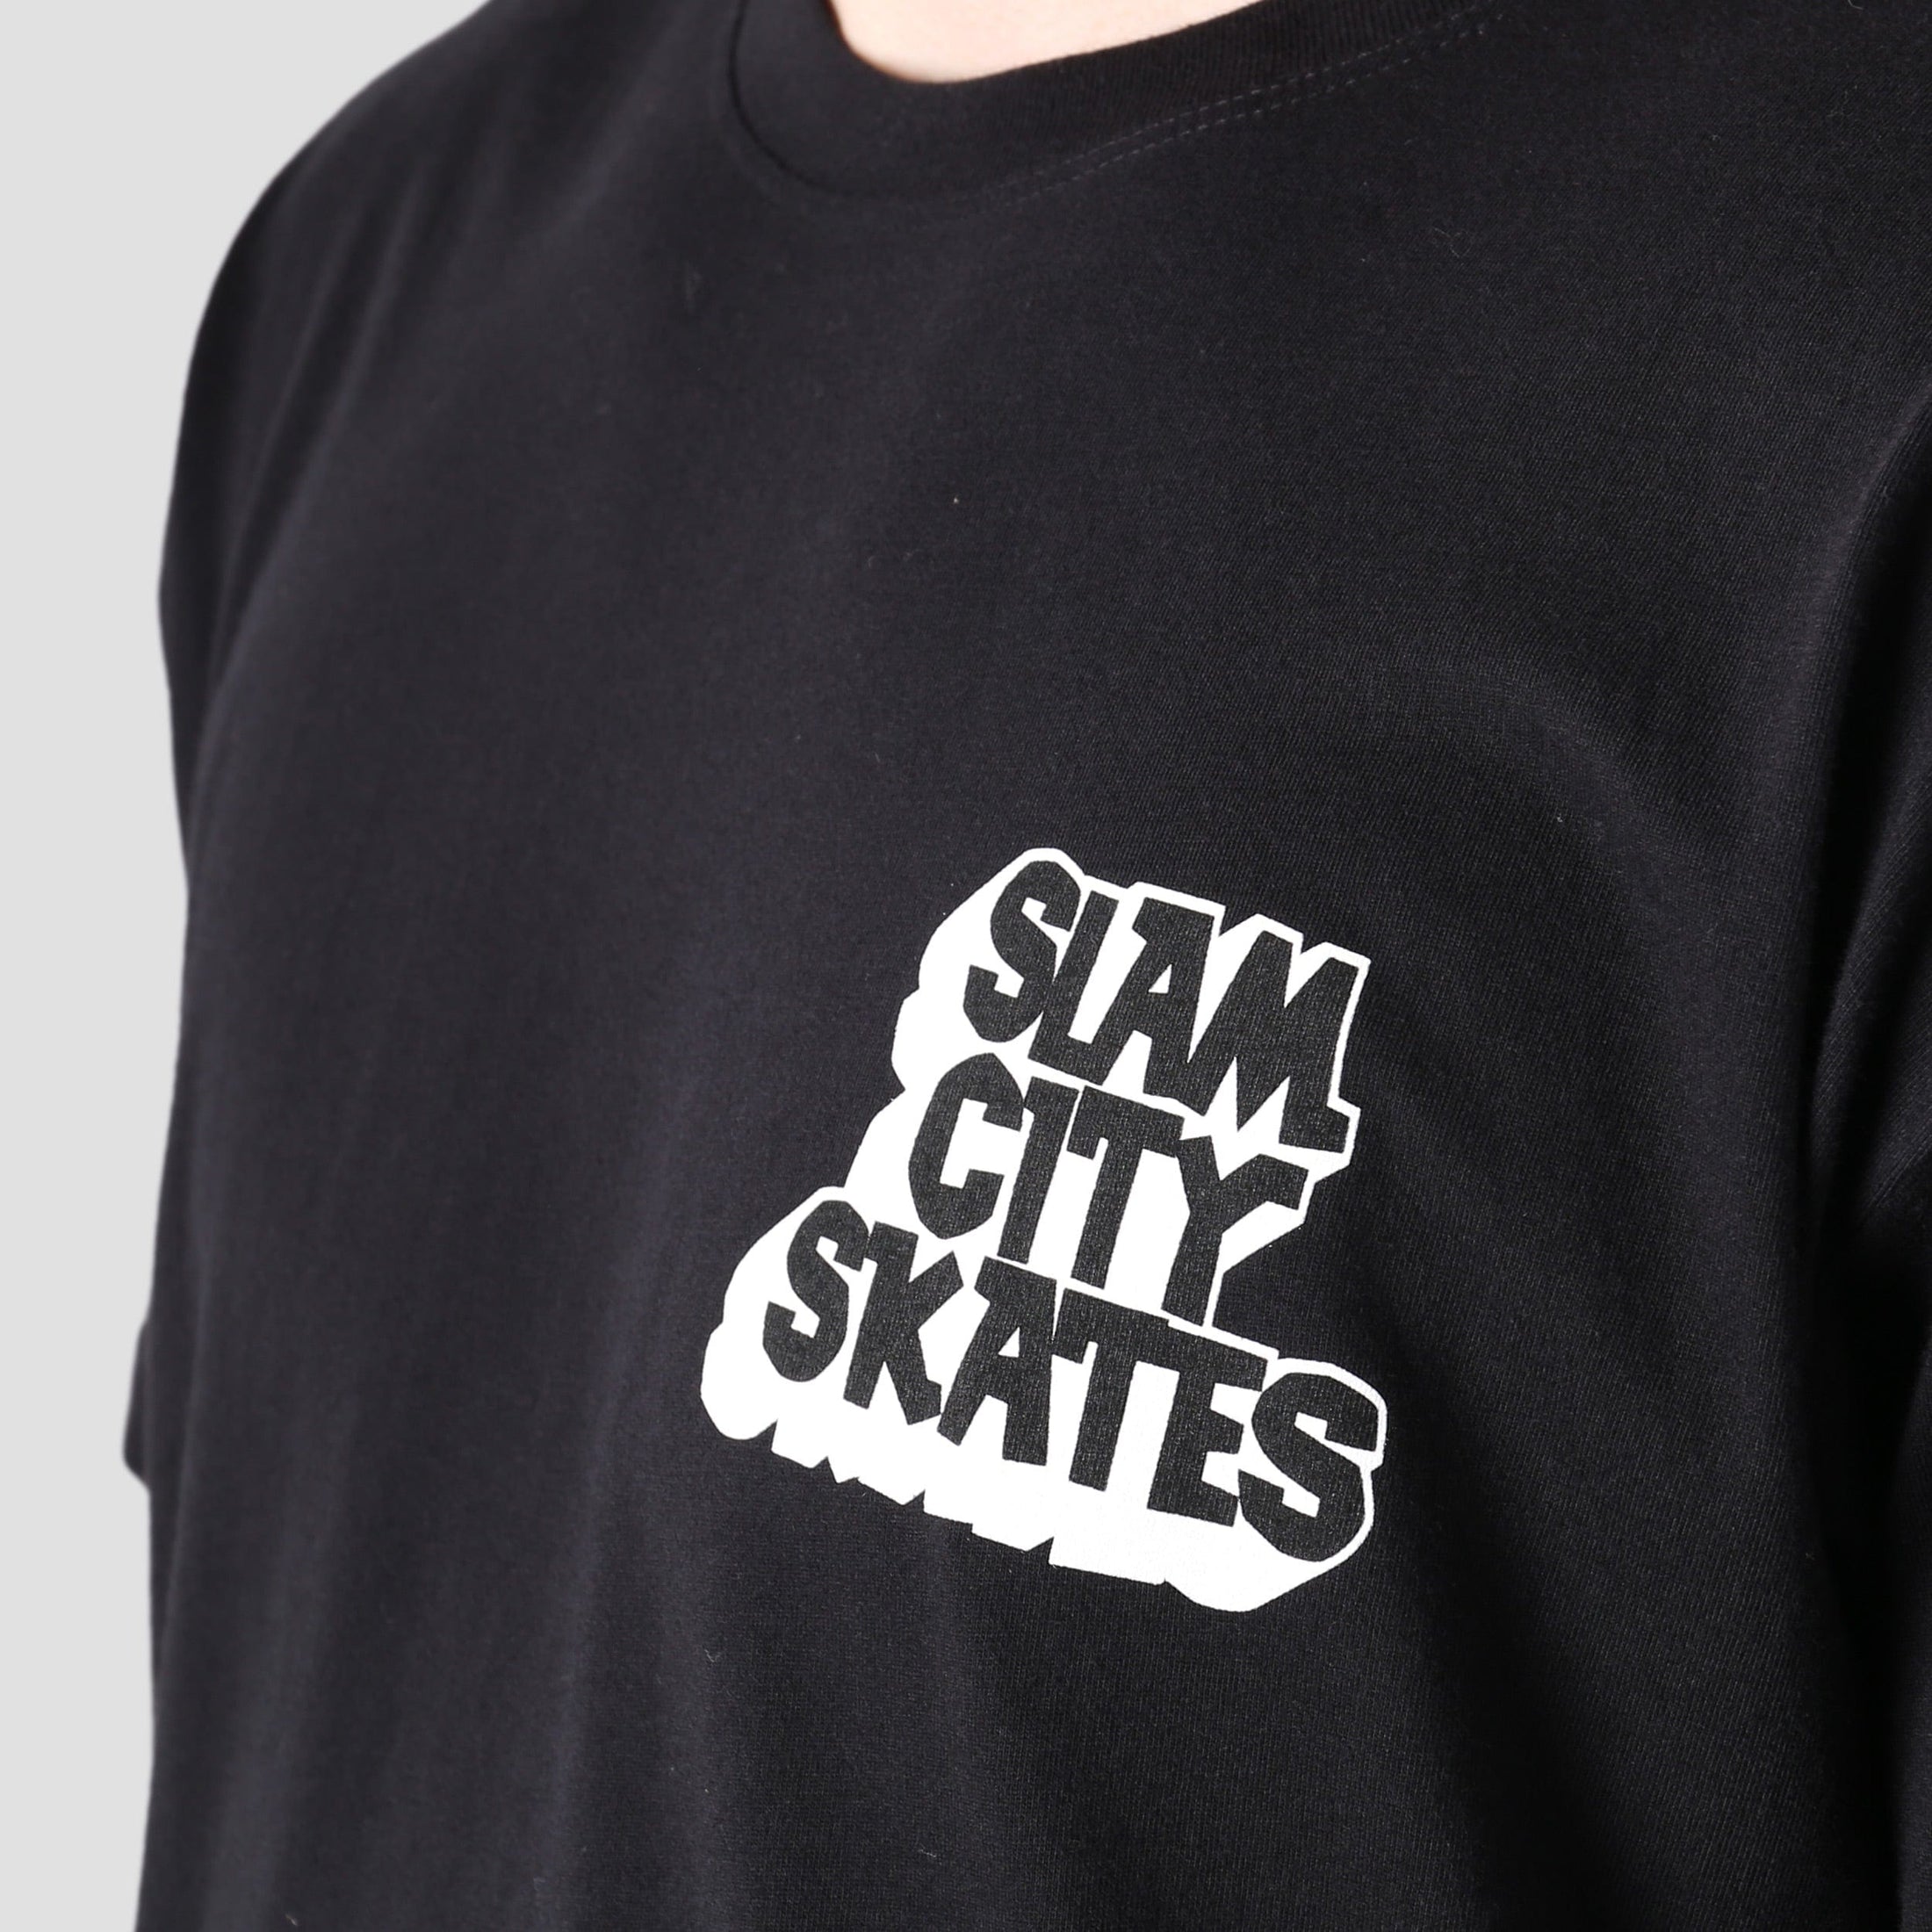 Slam City Skates Classic Chest Logo T-Shirt Black / White